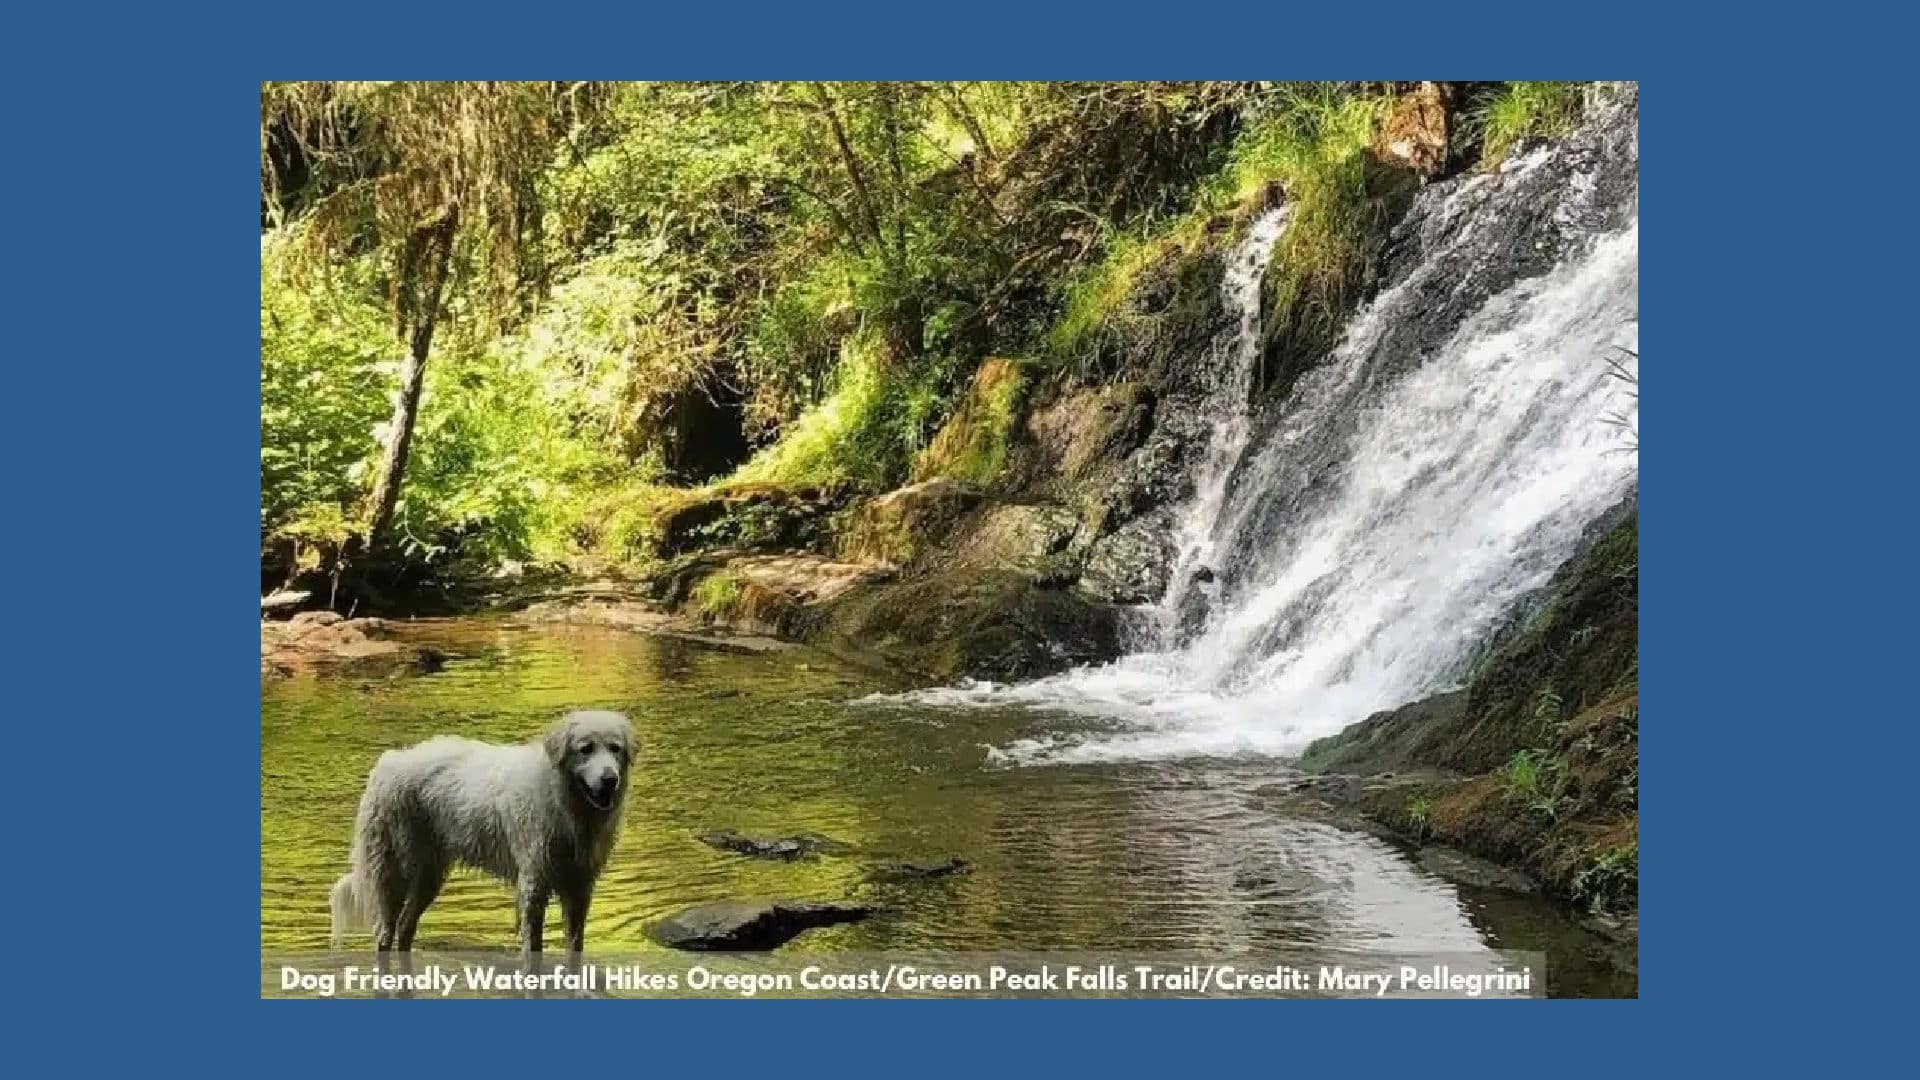 Lola at Green Peak Falls